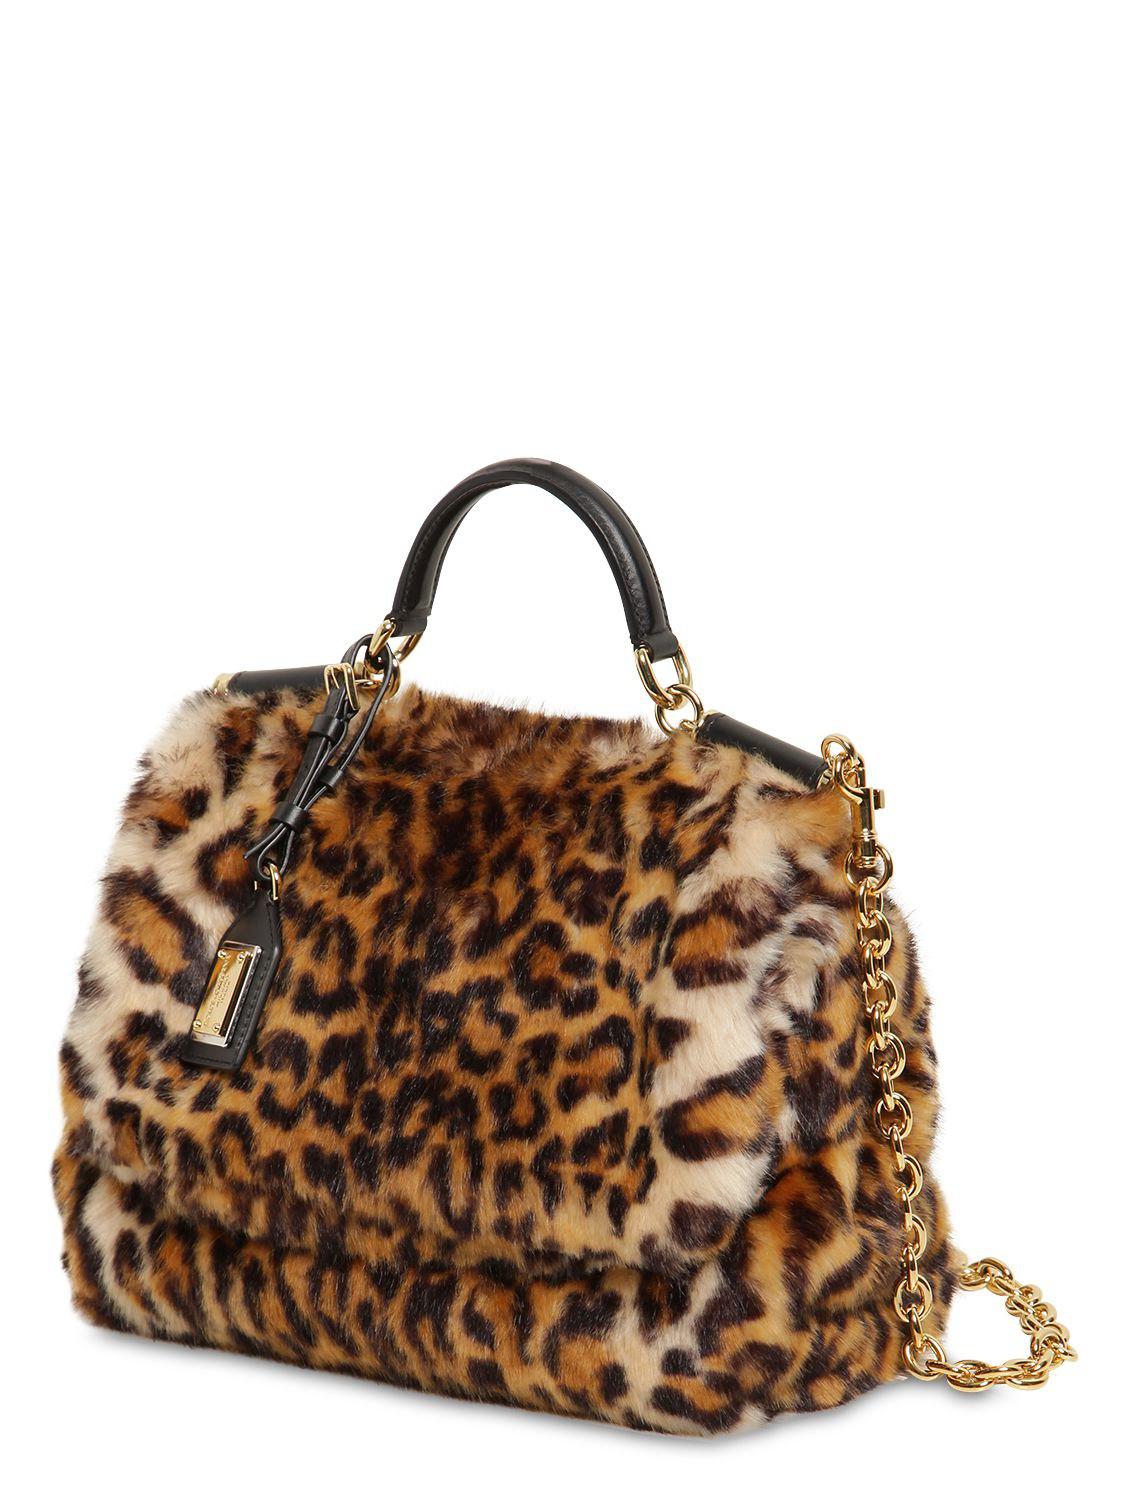 Dolce & Gabbana Leopard Print Sicily Shoulder Bag